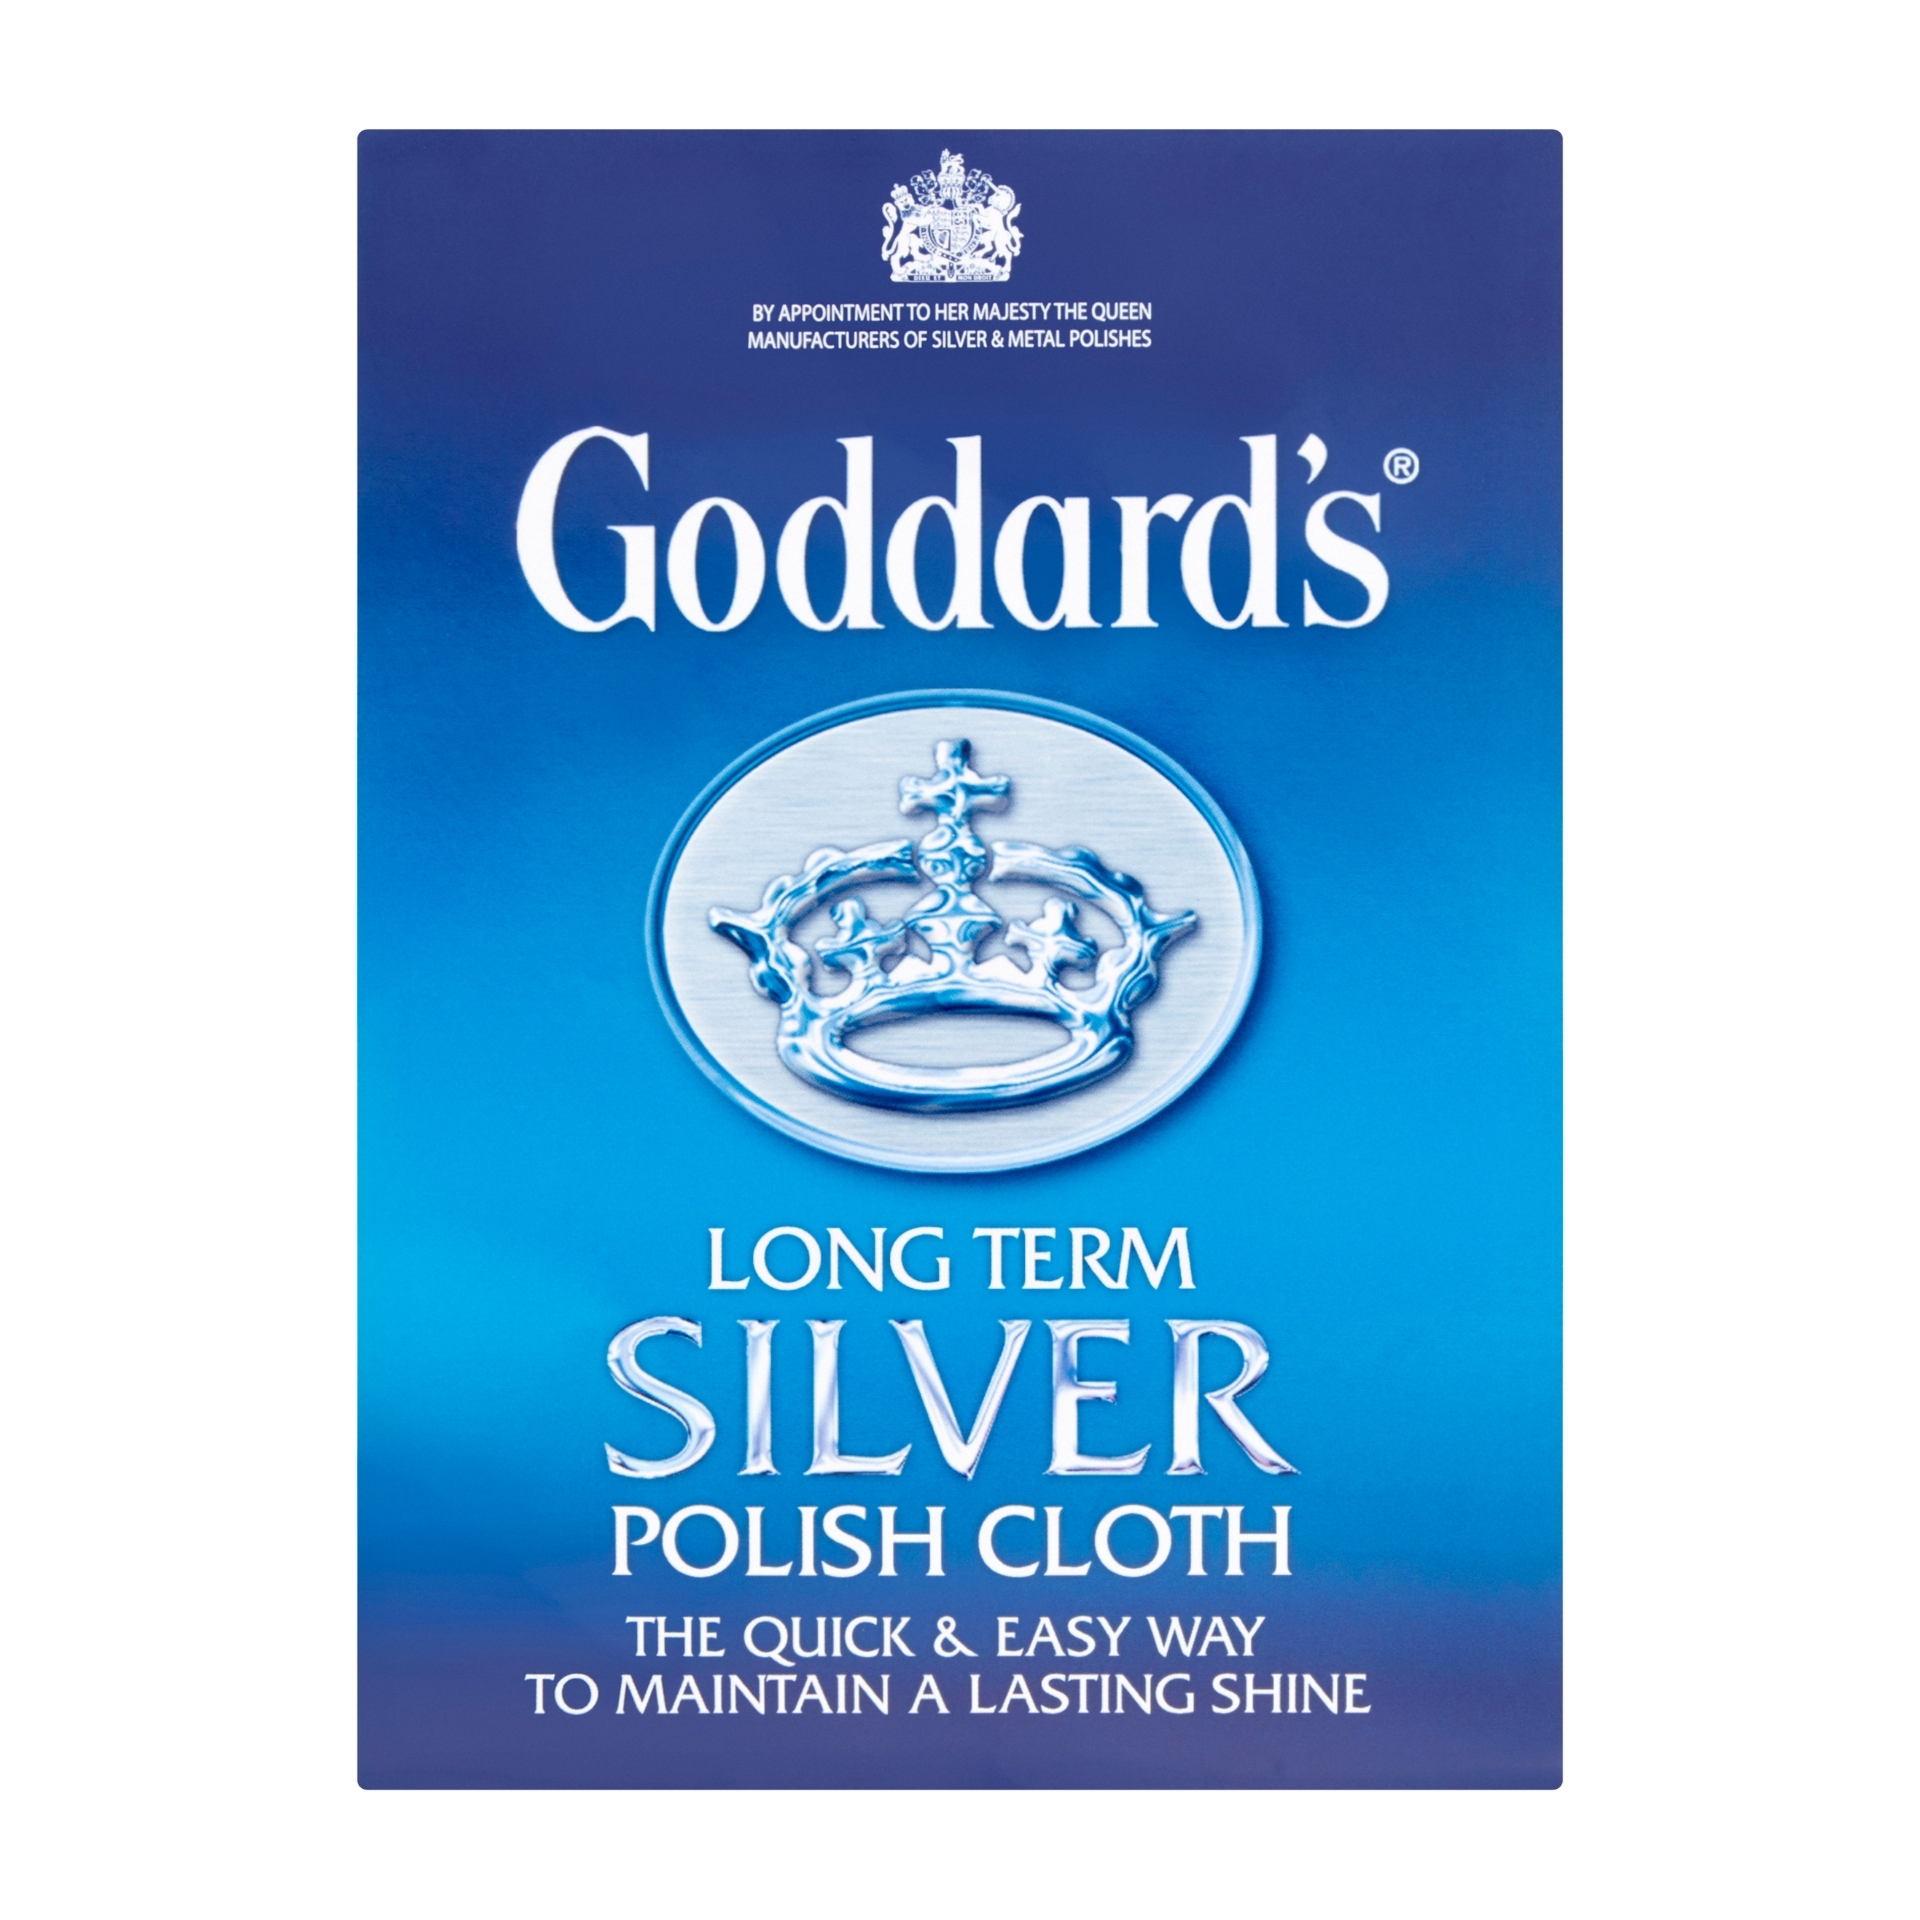 Silver Polishing Cloth - Goddard's